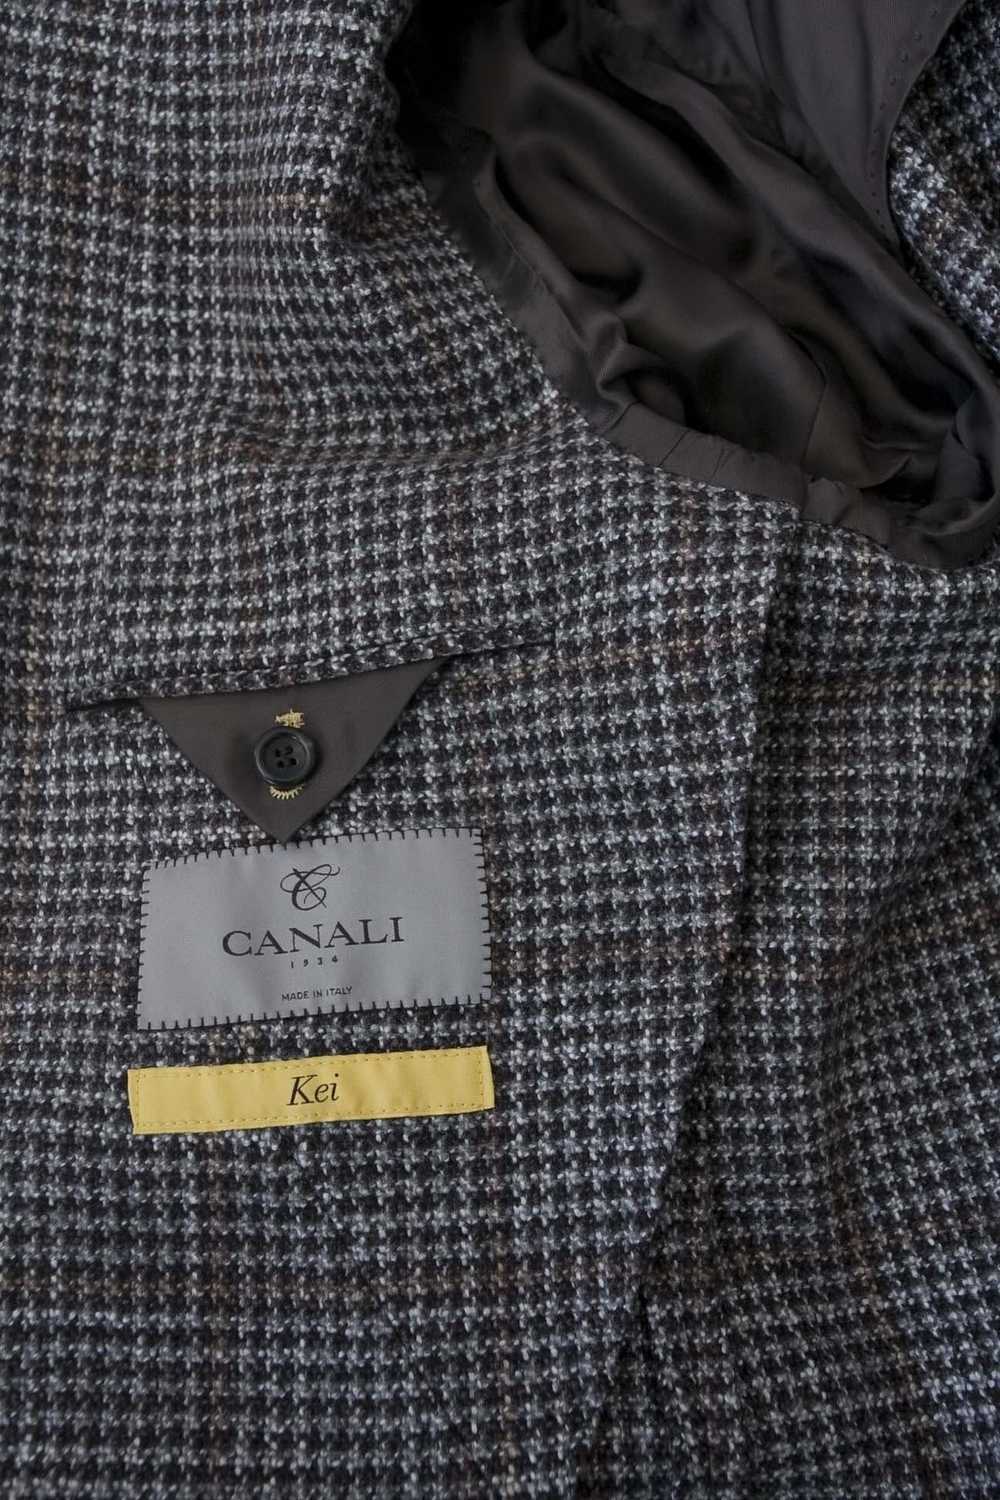 Canali Canali 1934 Kei Jacket Wool / Silk Size 56… - image 2